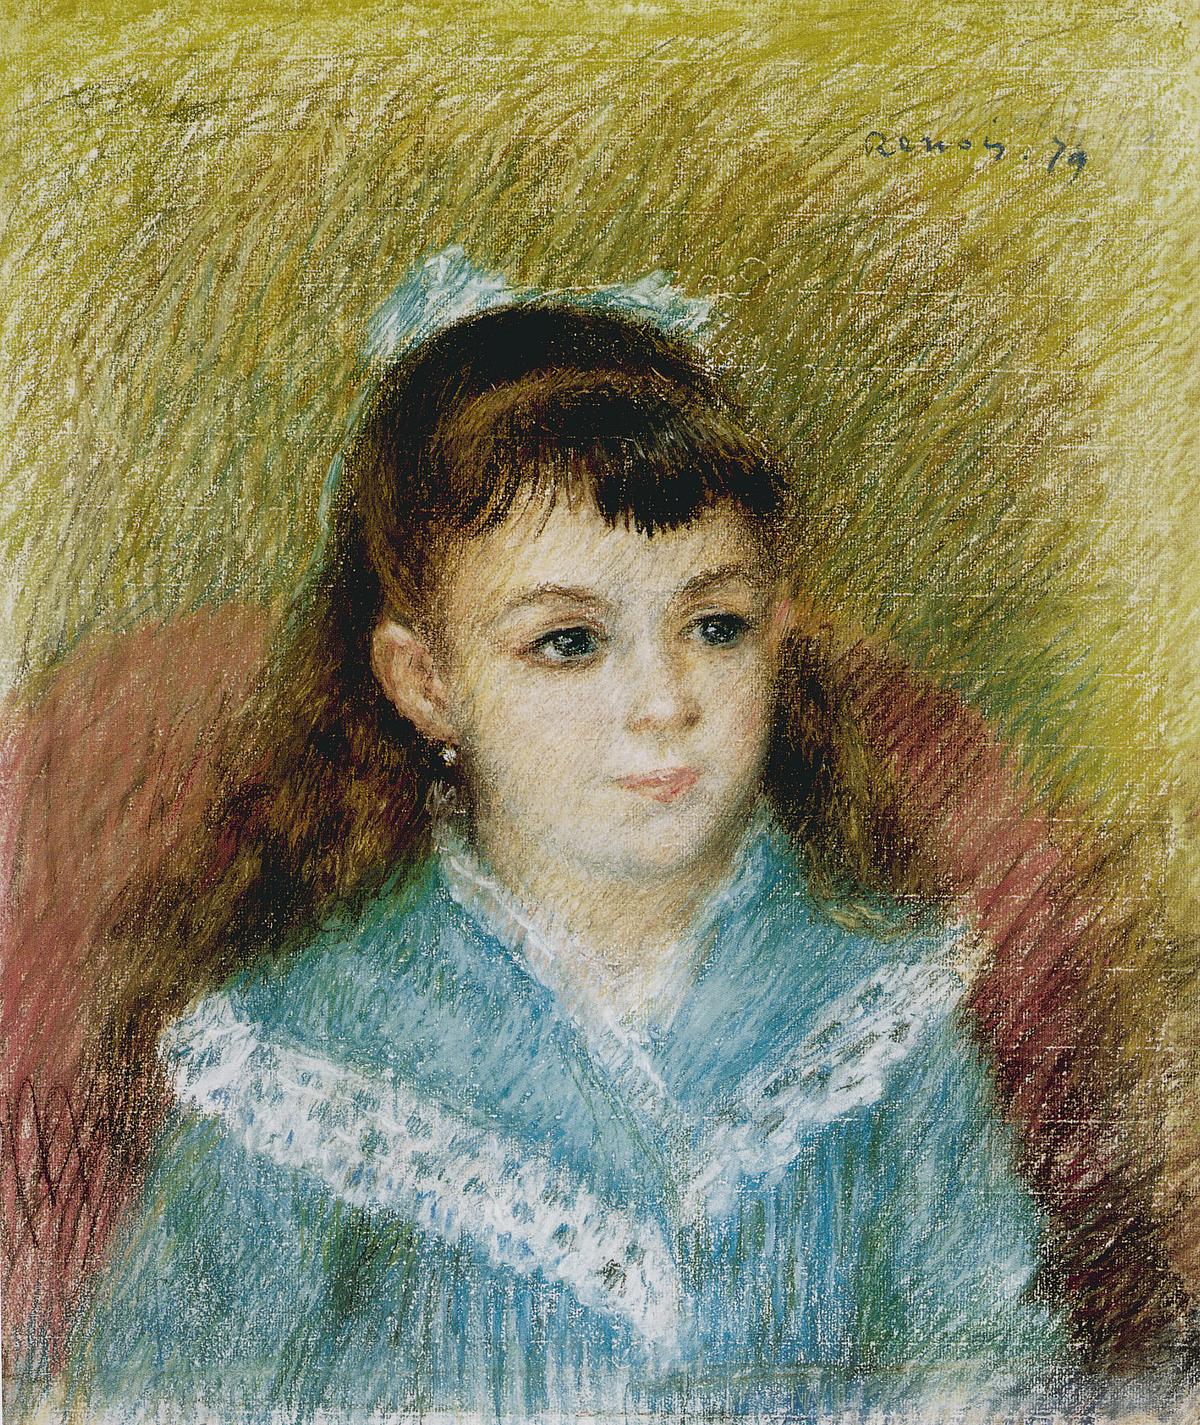 Portrait eines Mädchens in einem türkisen Kleid und mit rotbraunen langen Haaren von Renoir.